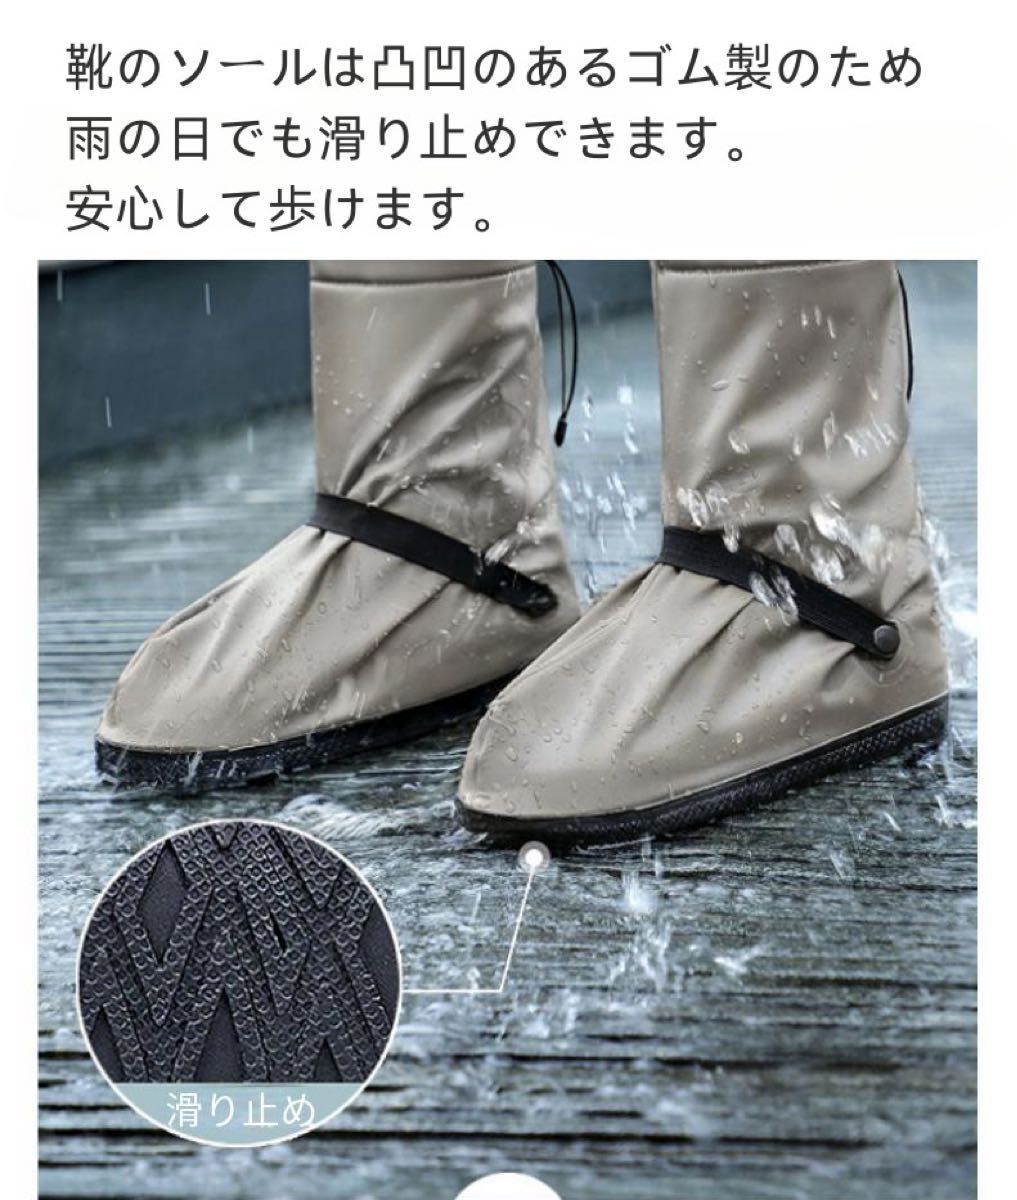 シューズカバー 防水 シリコン 雨 靴用防水カバー レインシューズカバー 雨の日 靴カバー 梅雨 雨 レディース Lサイズ 黒